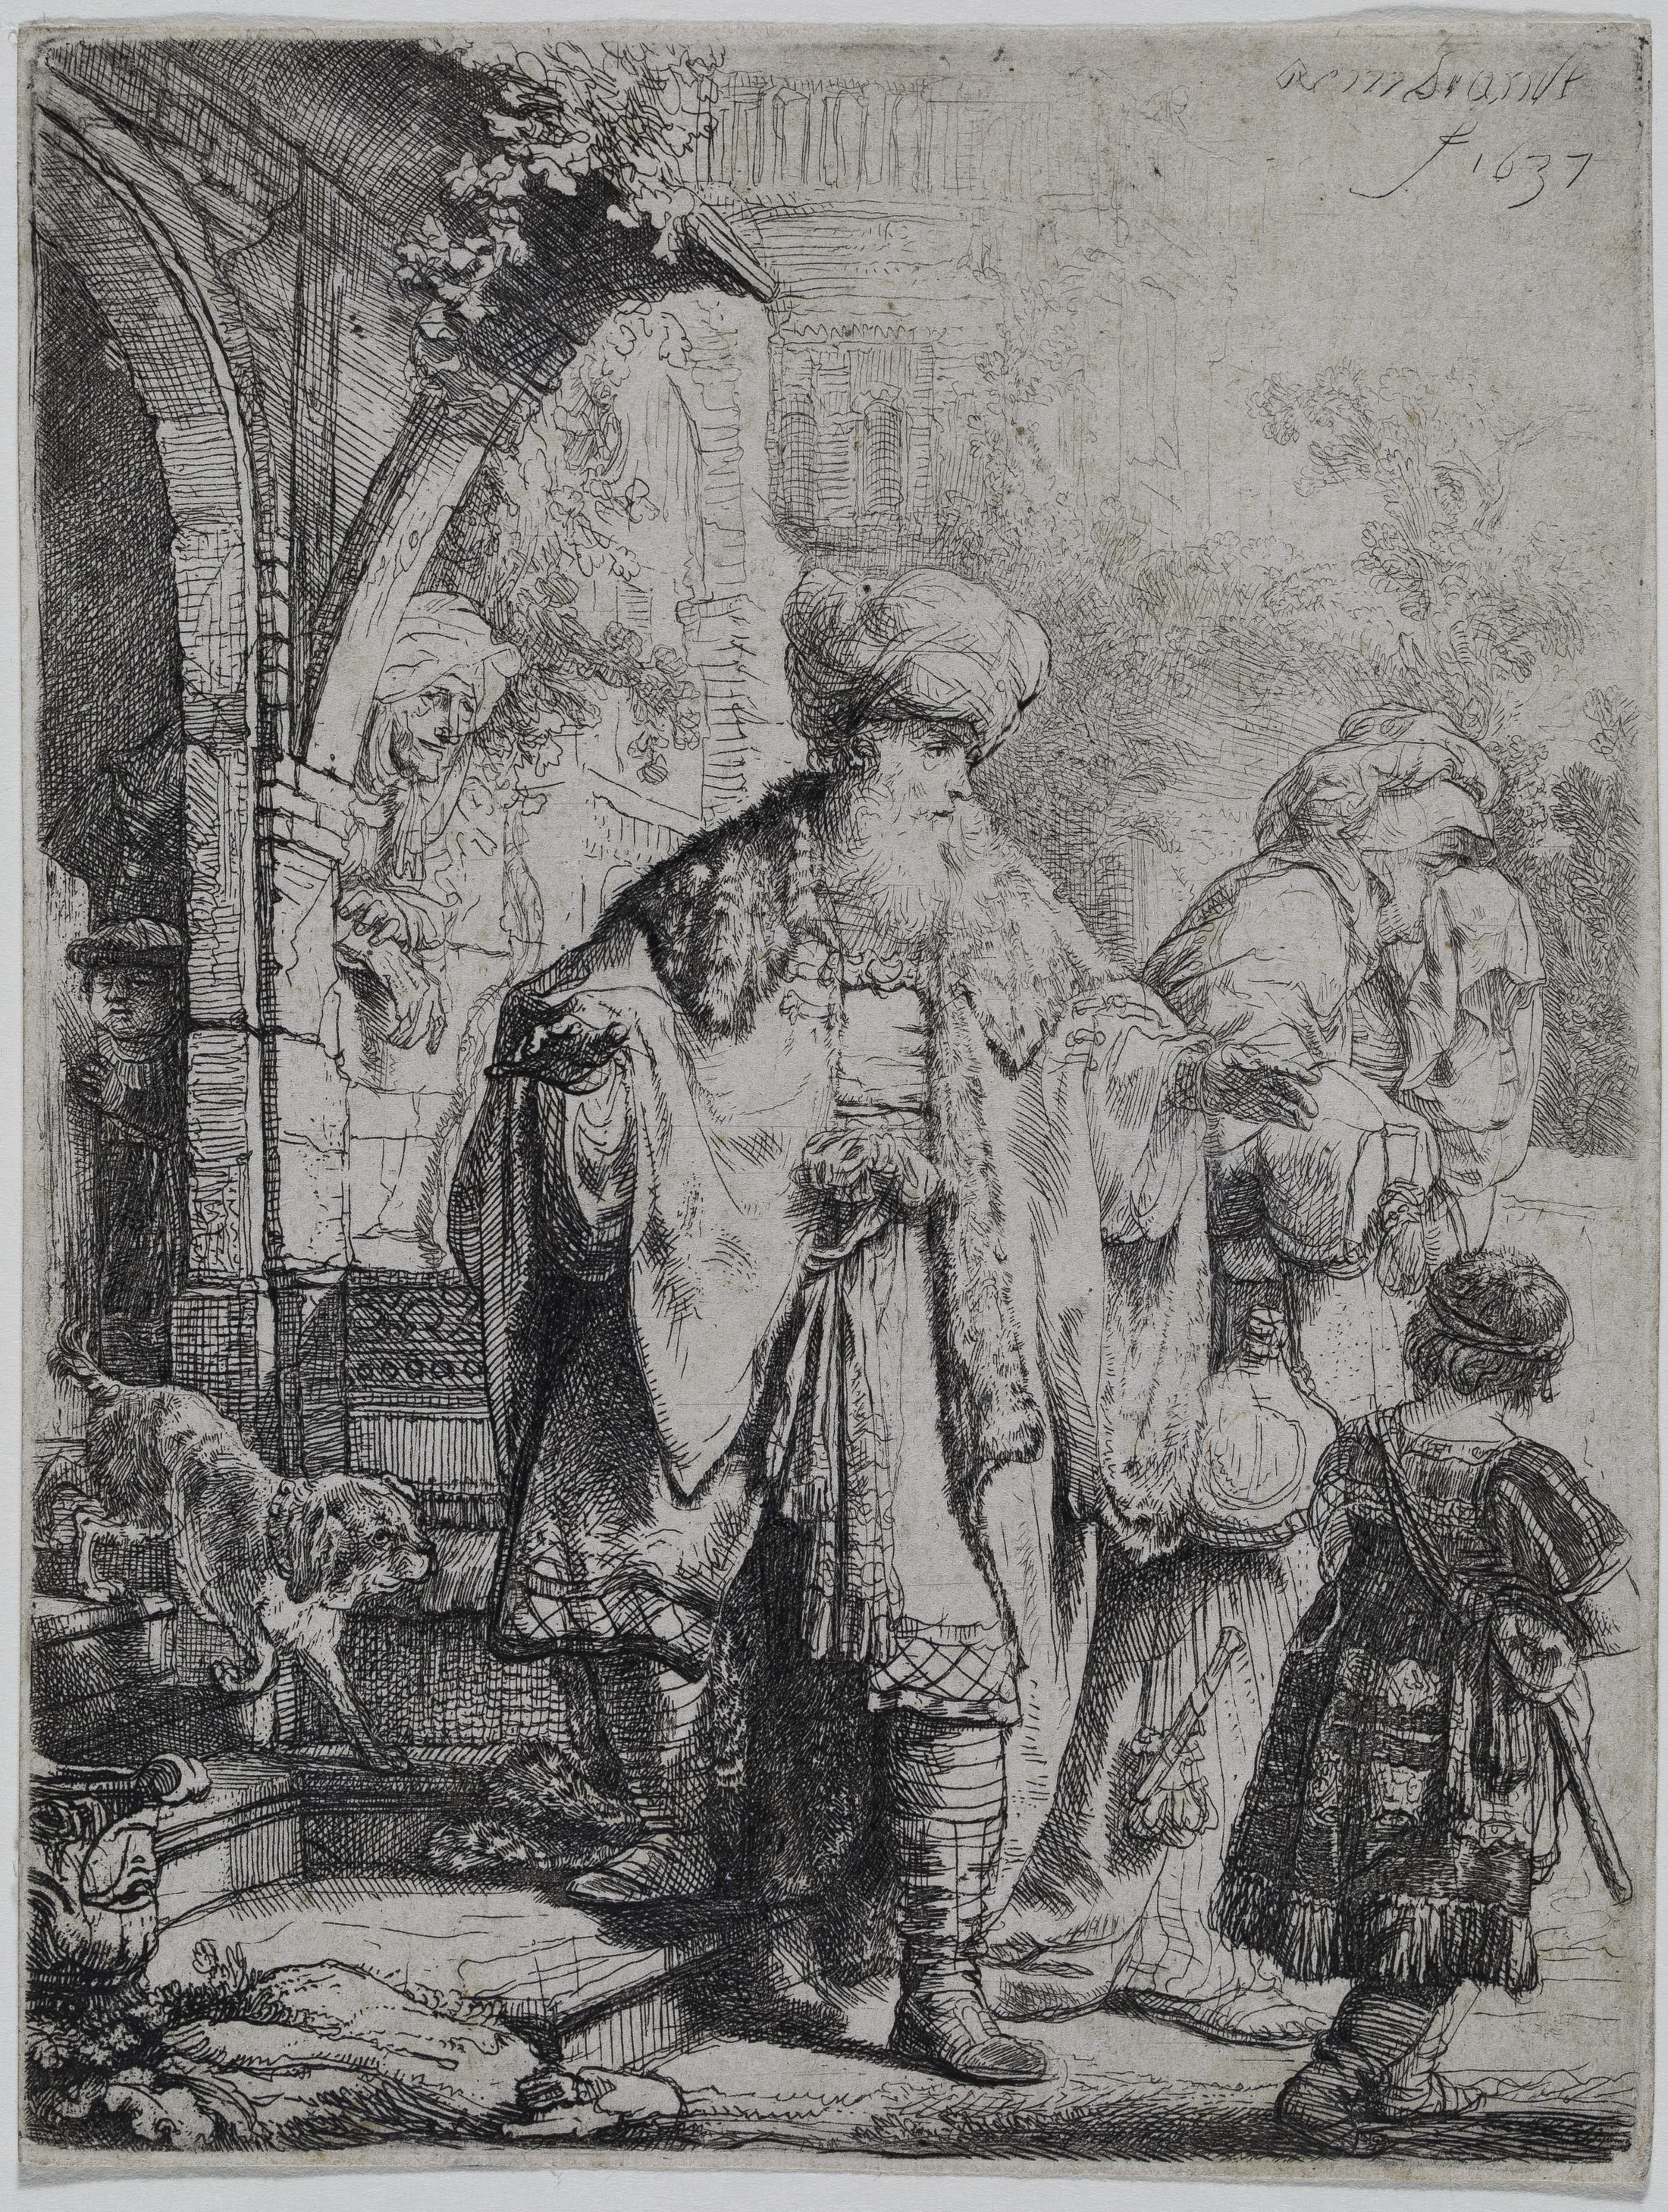 Zeichnung des Künstlers Rembrandt mit einem biblischen Gleichnis (Wird bei Klick vergrößert)